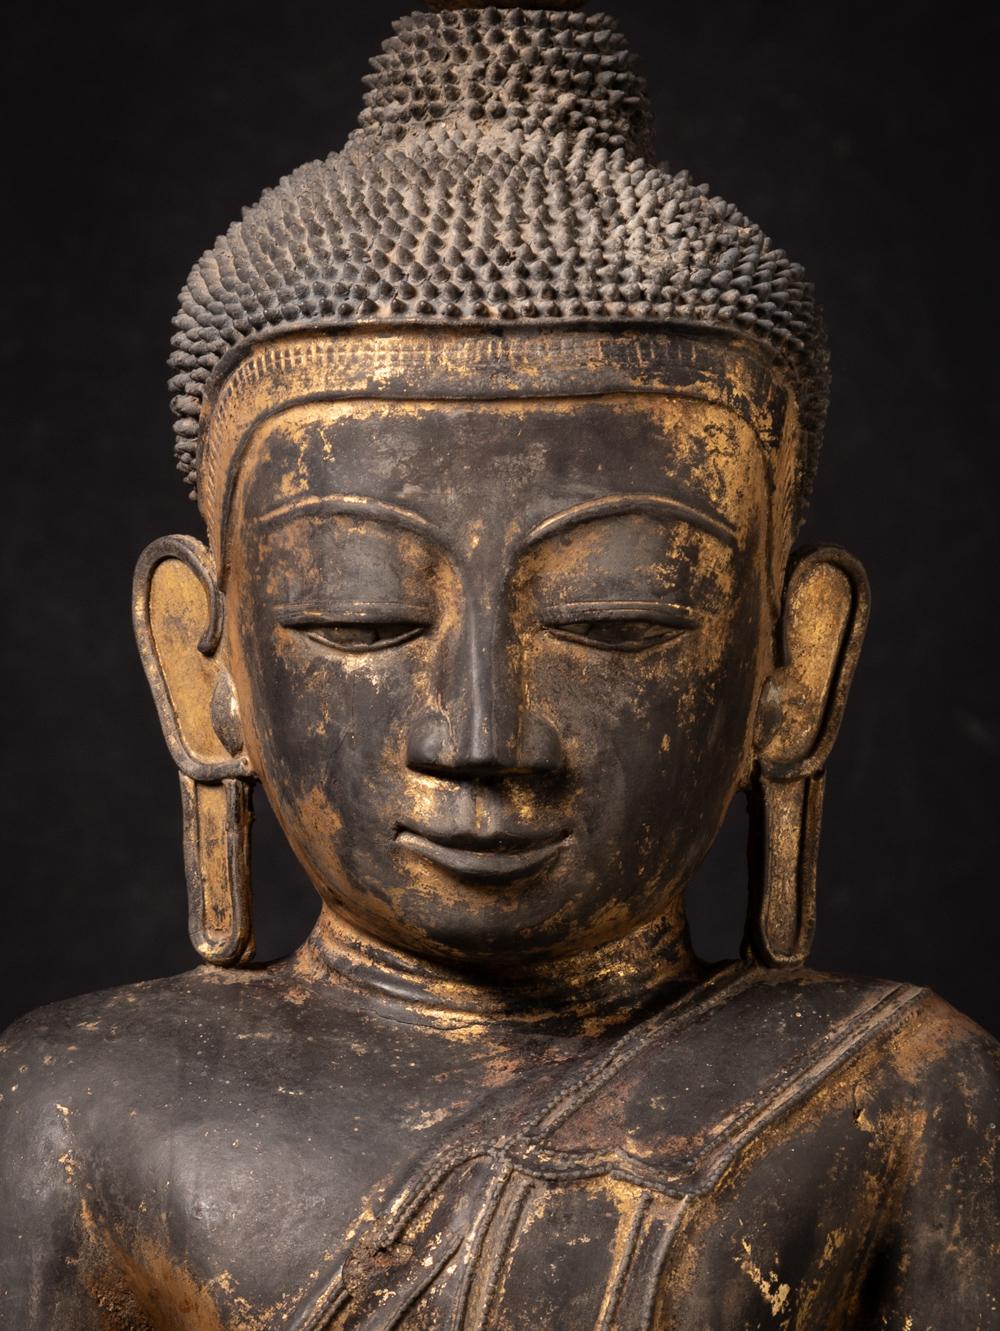 Besondere antike birmanische Buddha-Statue
MATERIAL : Lackwaren
99,5 cm hoch
57,5 cm breit und 38 cm tief
Mit Spuren von 24 krt. Vergoldung
Shan (Tai Yai) Stil
Bhumisparsha Mudra
18. Jahrhundert
Mit einem schönen Ausdruck!
Gewicht: 4,25 kg
Mit